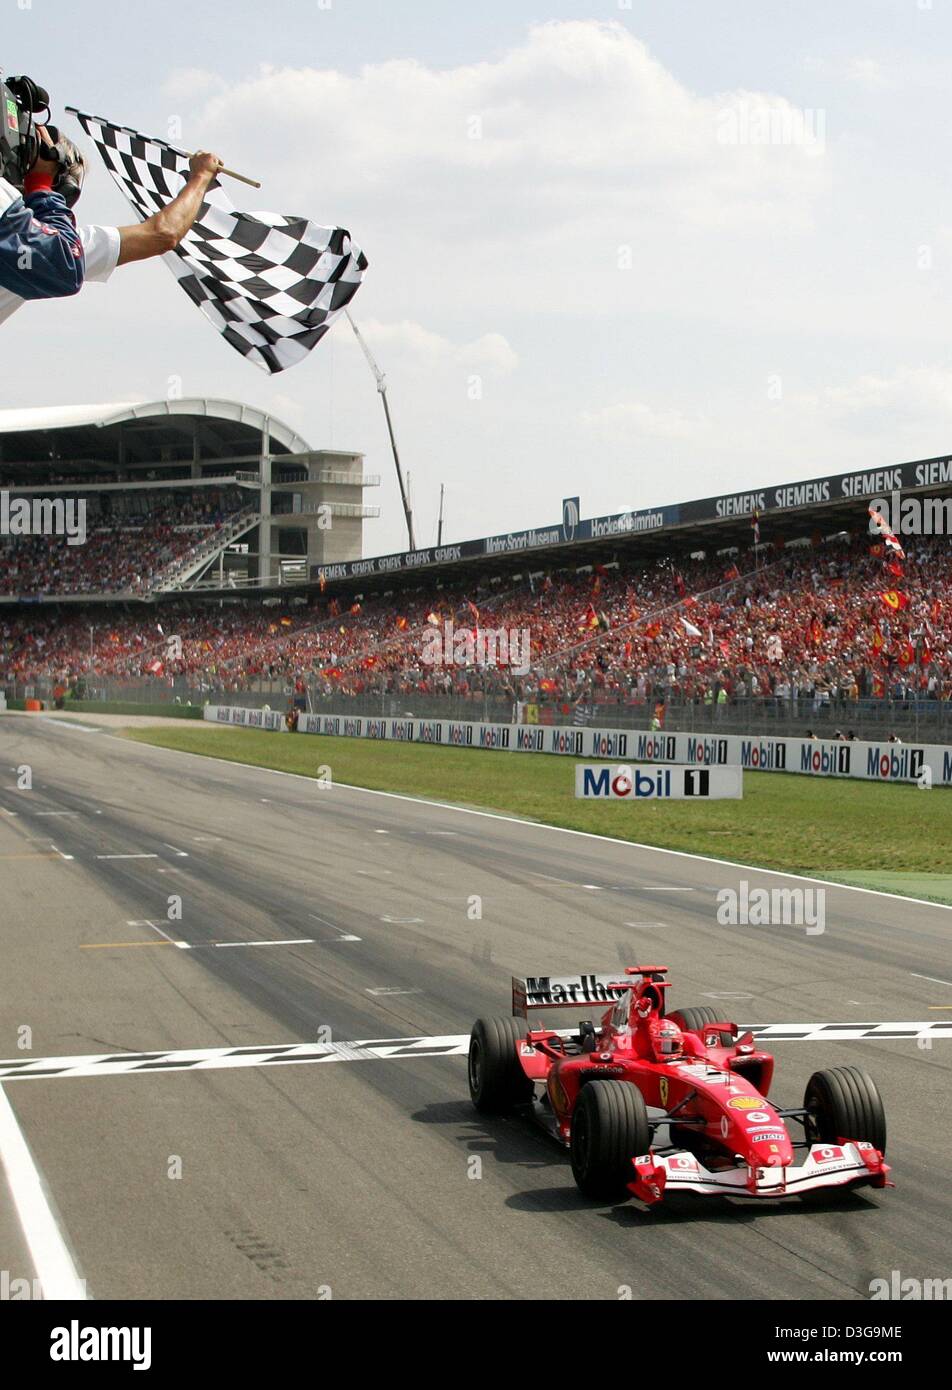 (Afp) - une autre race, un autre drapeau à damiers pour Schumacher et son équipe Ferrari. Pilote de Formule 1 l'Allemand Michael Schumacher remporte le Grand Prix d'Allemagne à Hockenheim, Allemagne, 25 juillet 2004. Le champ de formule 1 a remporté un nombre record de 11 de 12 courses cette saison de course. Banque D'Images